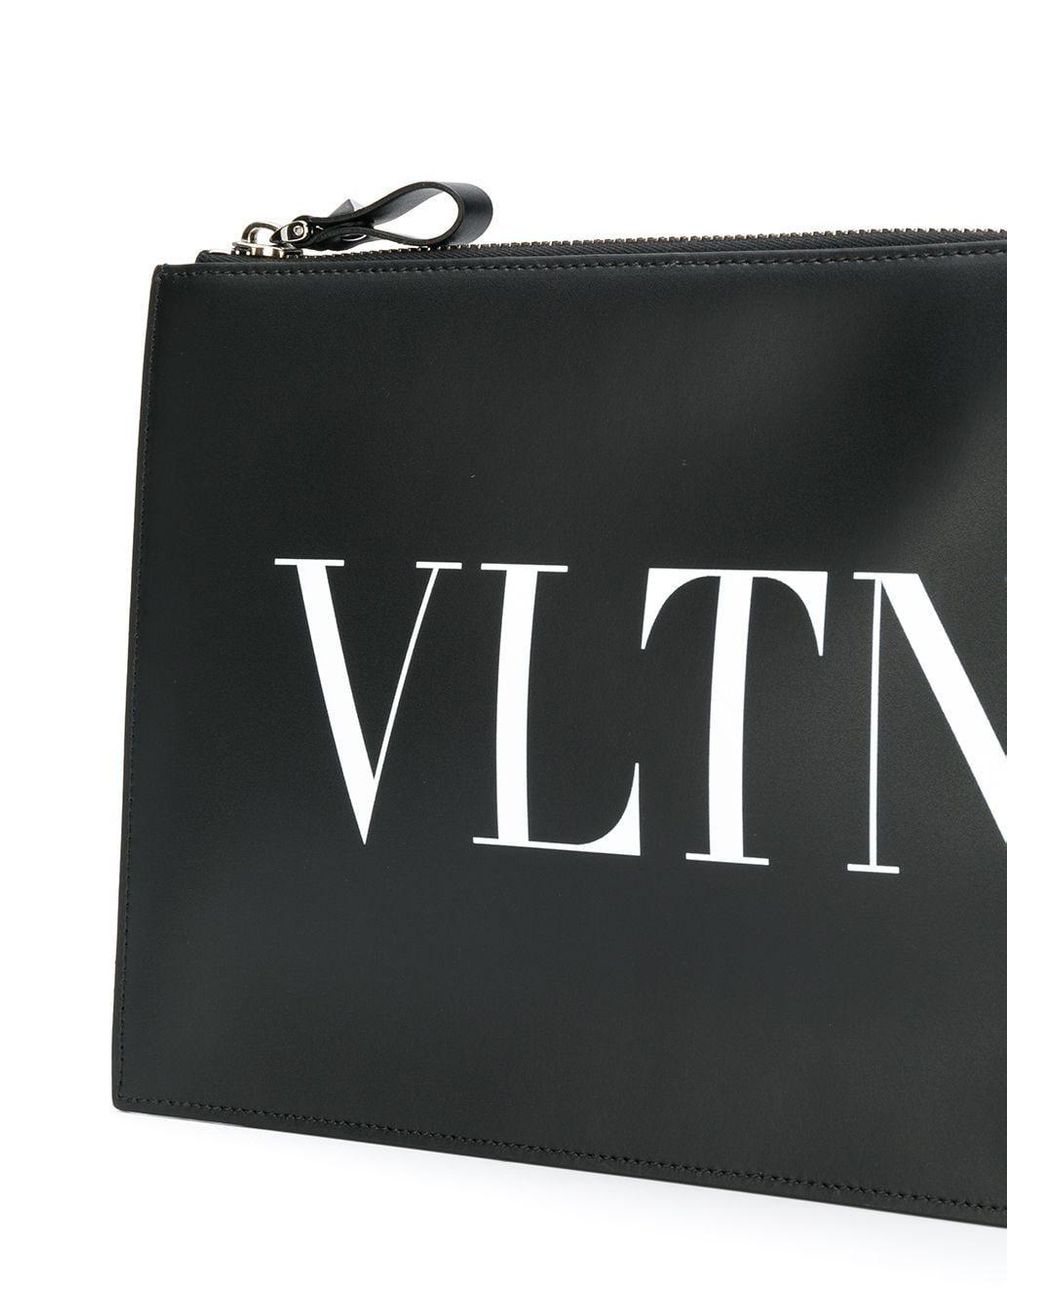 い出のひと時に、とびきりのおしゃれを！ VLTN Valentino 正規品 Vロゴ 新作 新品 ブラッククラッチバッグ - その他 -  labelians.fr